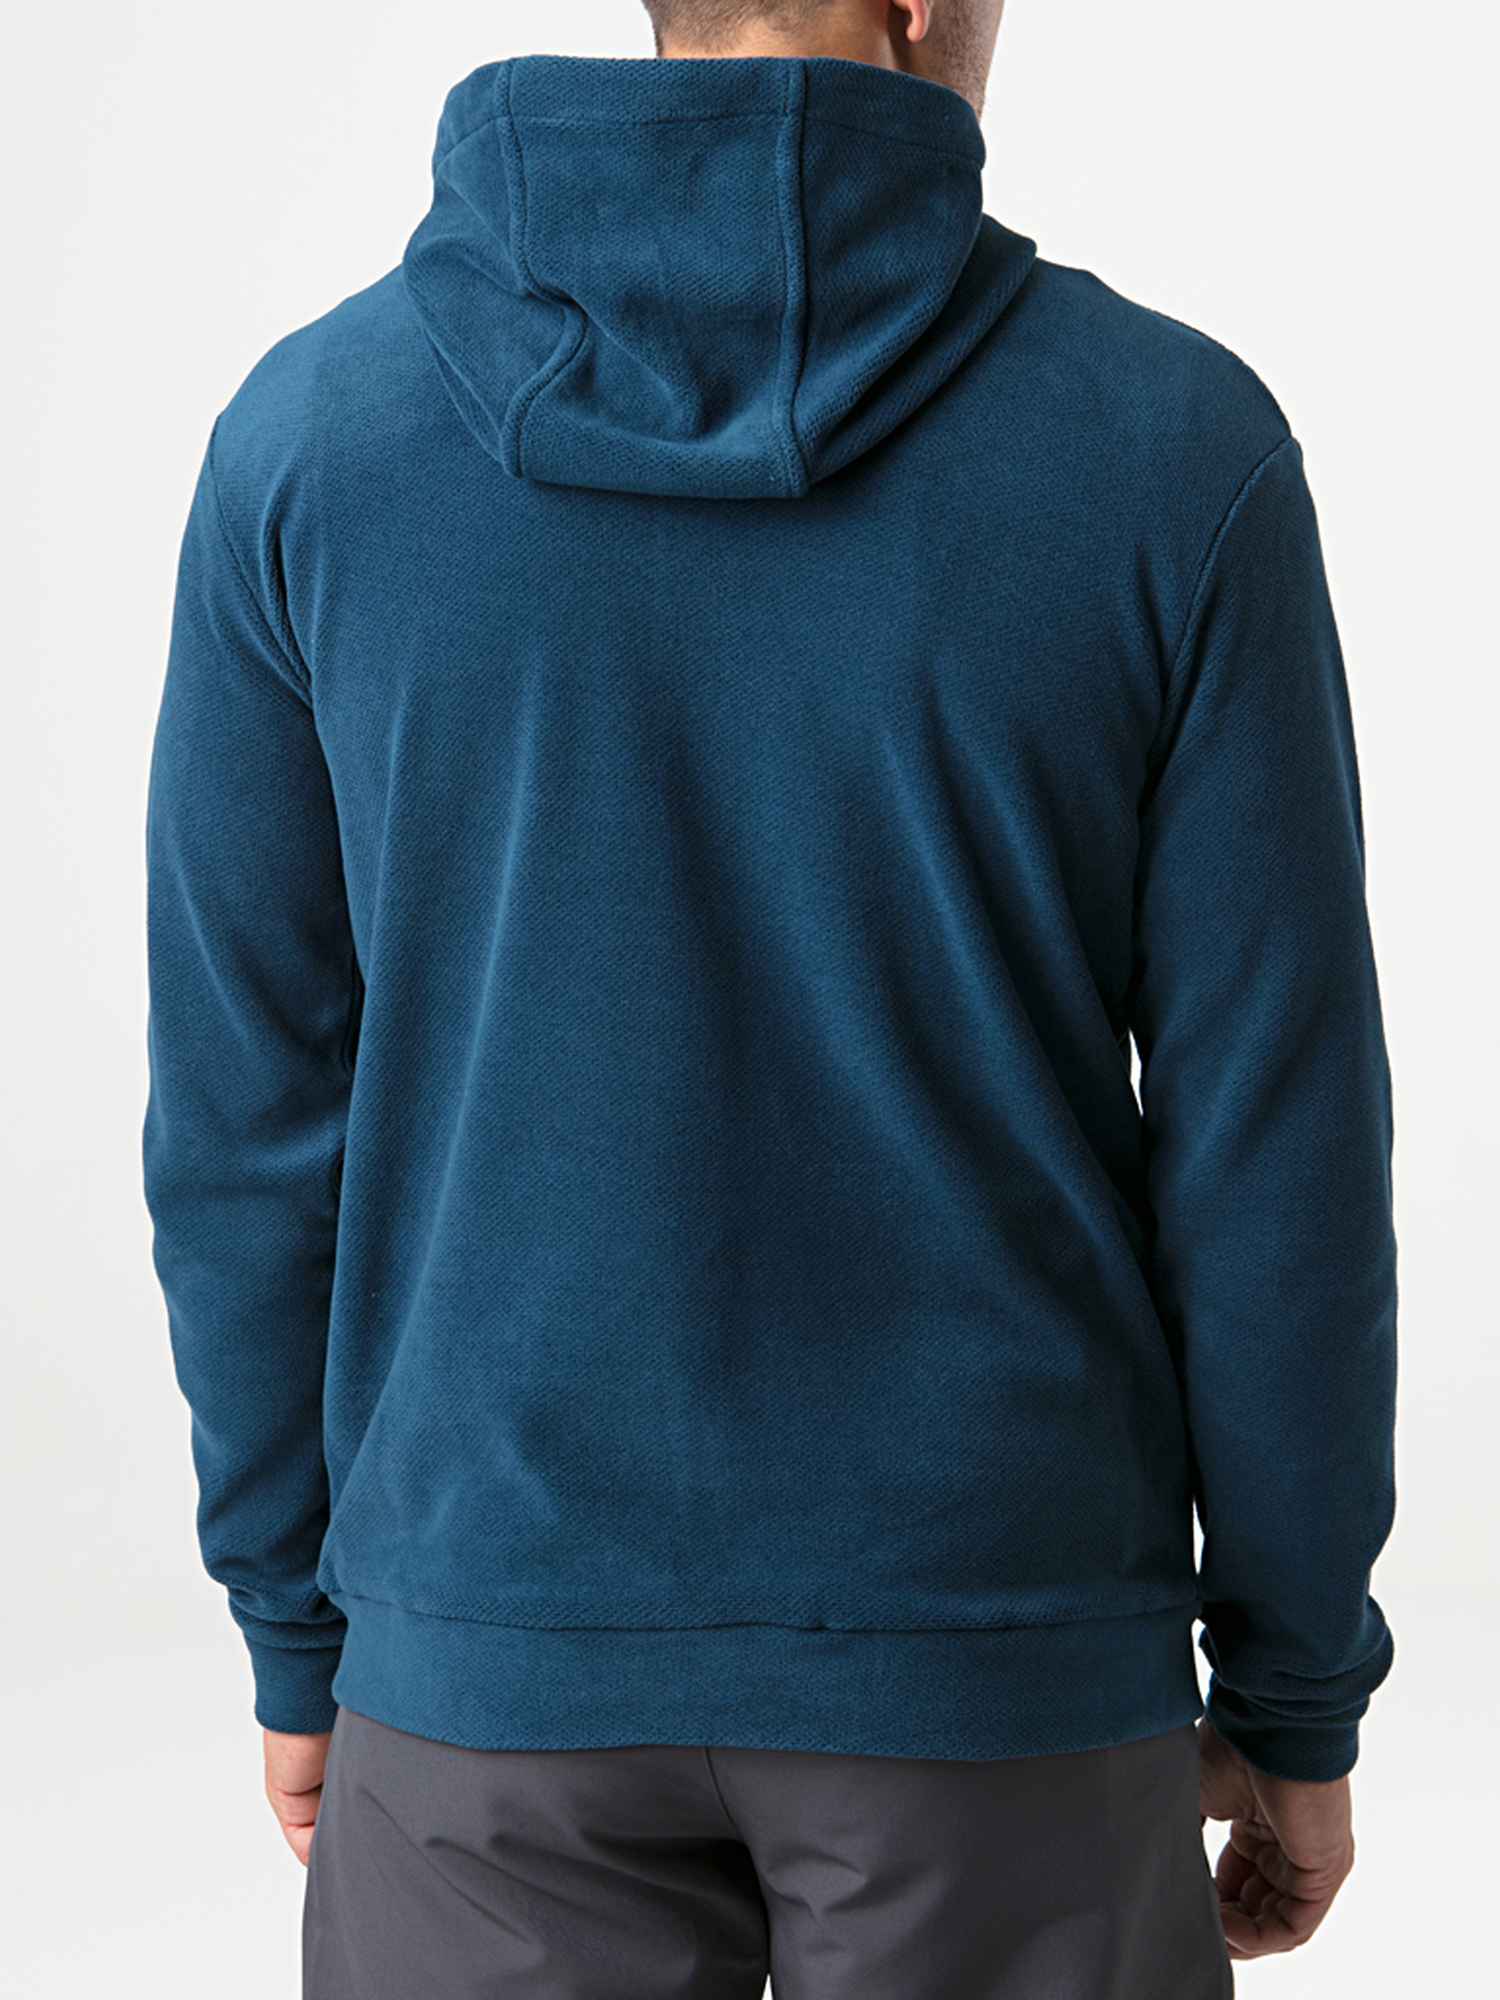 Men's functional sweater